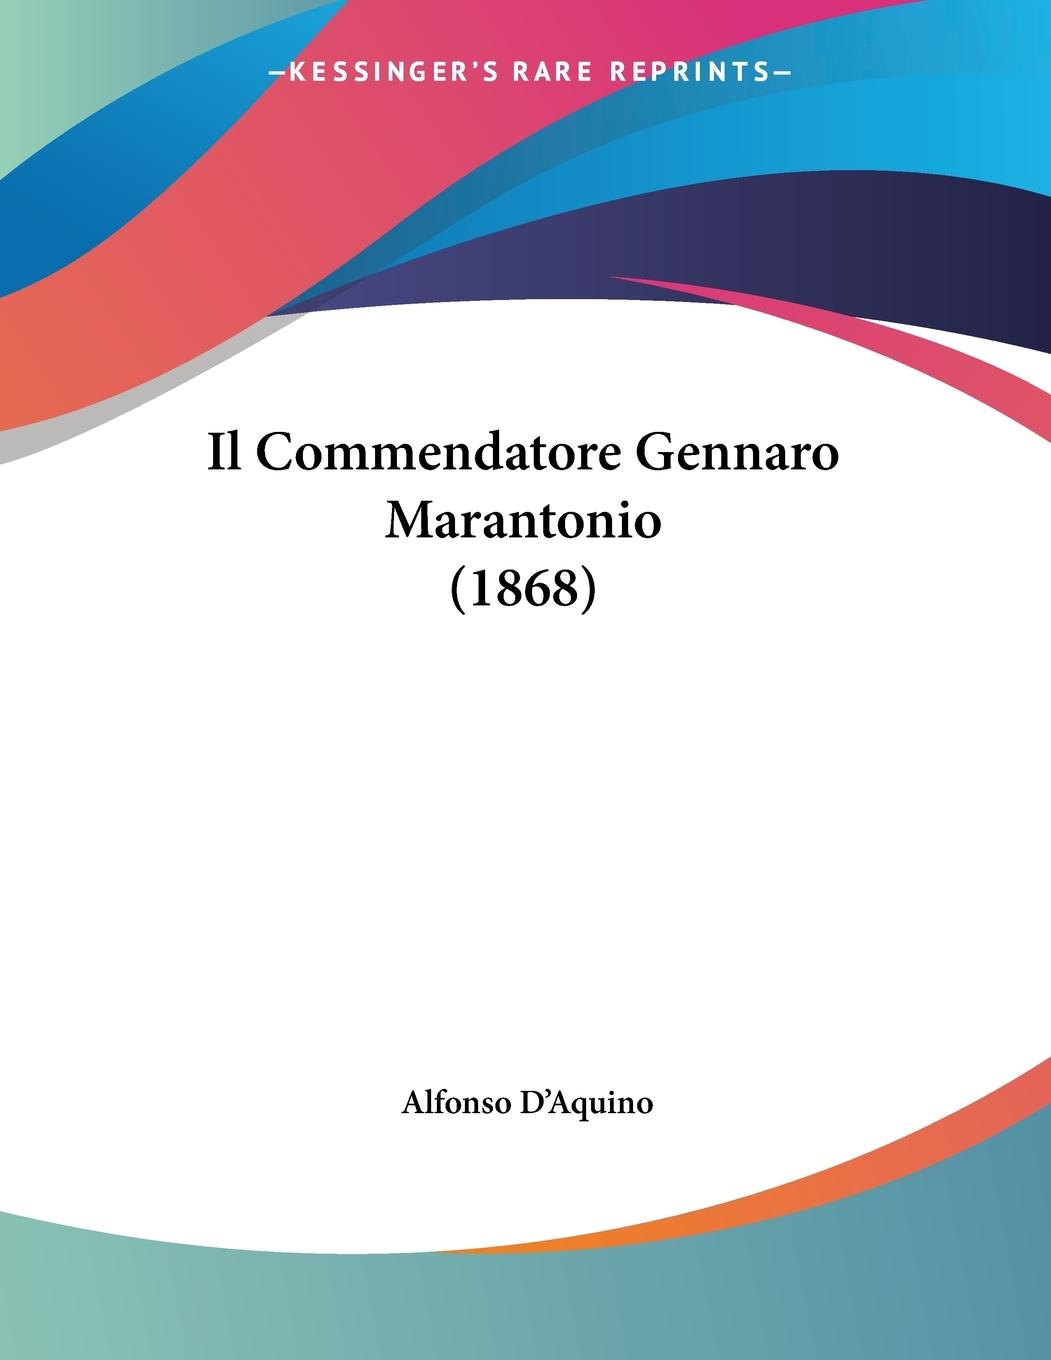 D Aquino, A: Commendatore Gennaro Marantonio (1868) - D Aquino, Alfonso